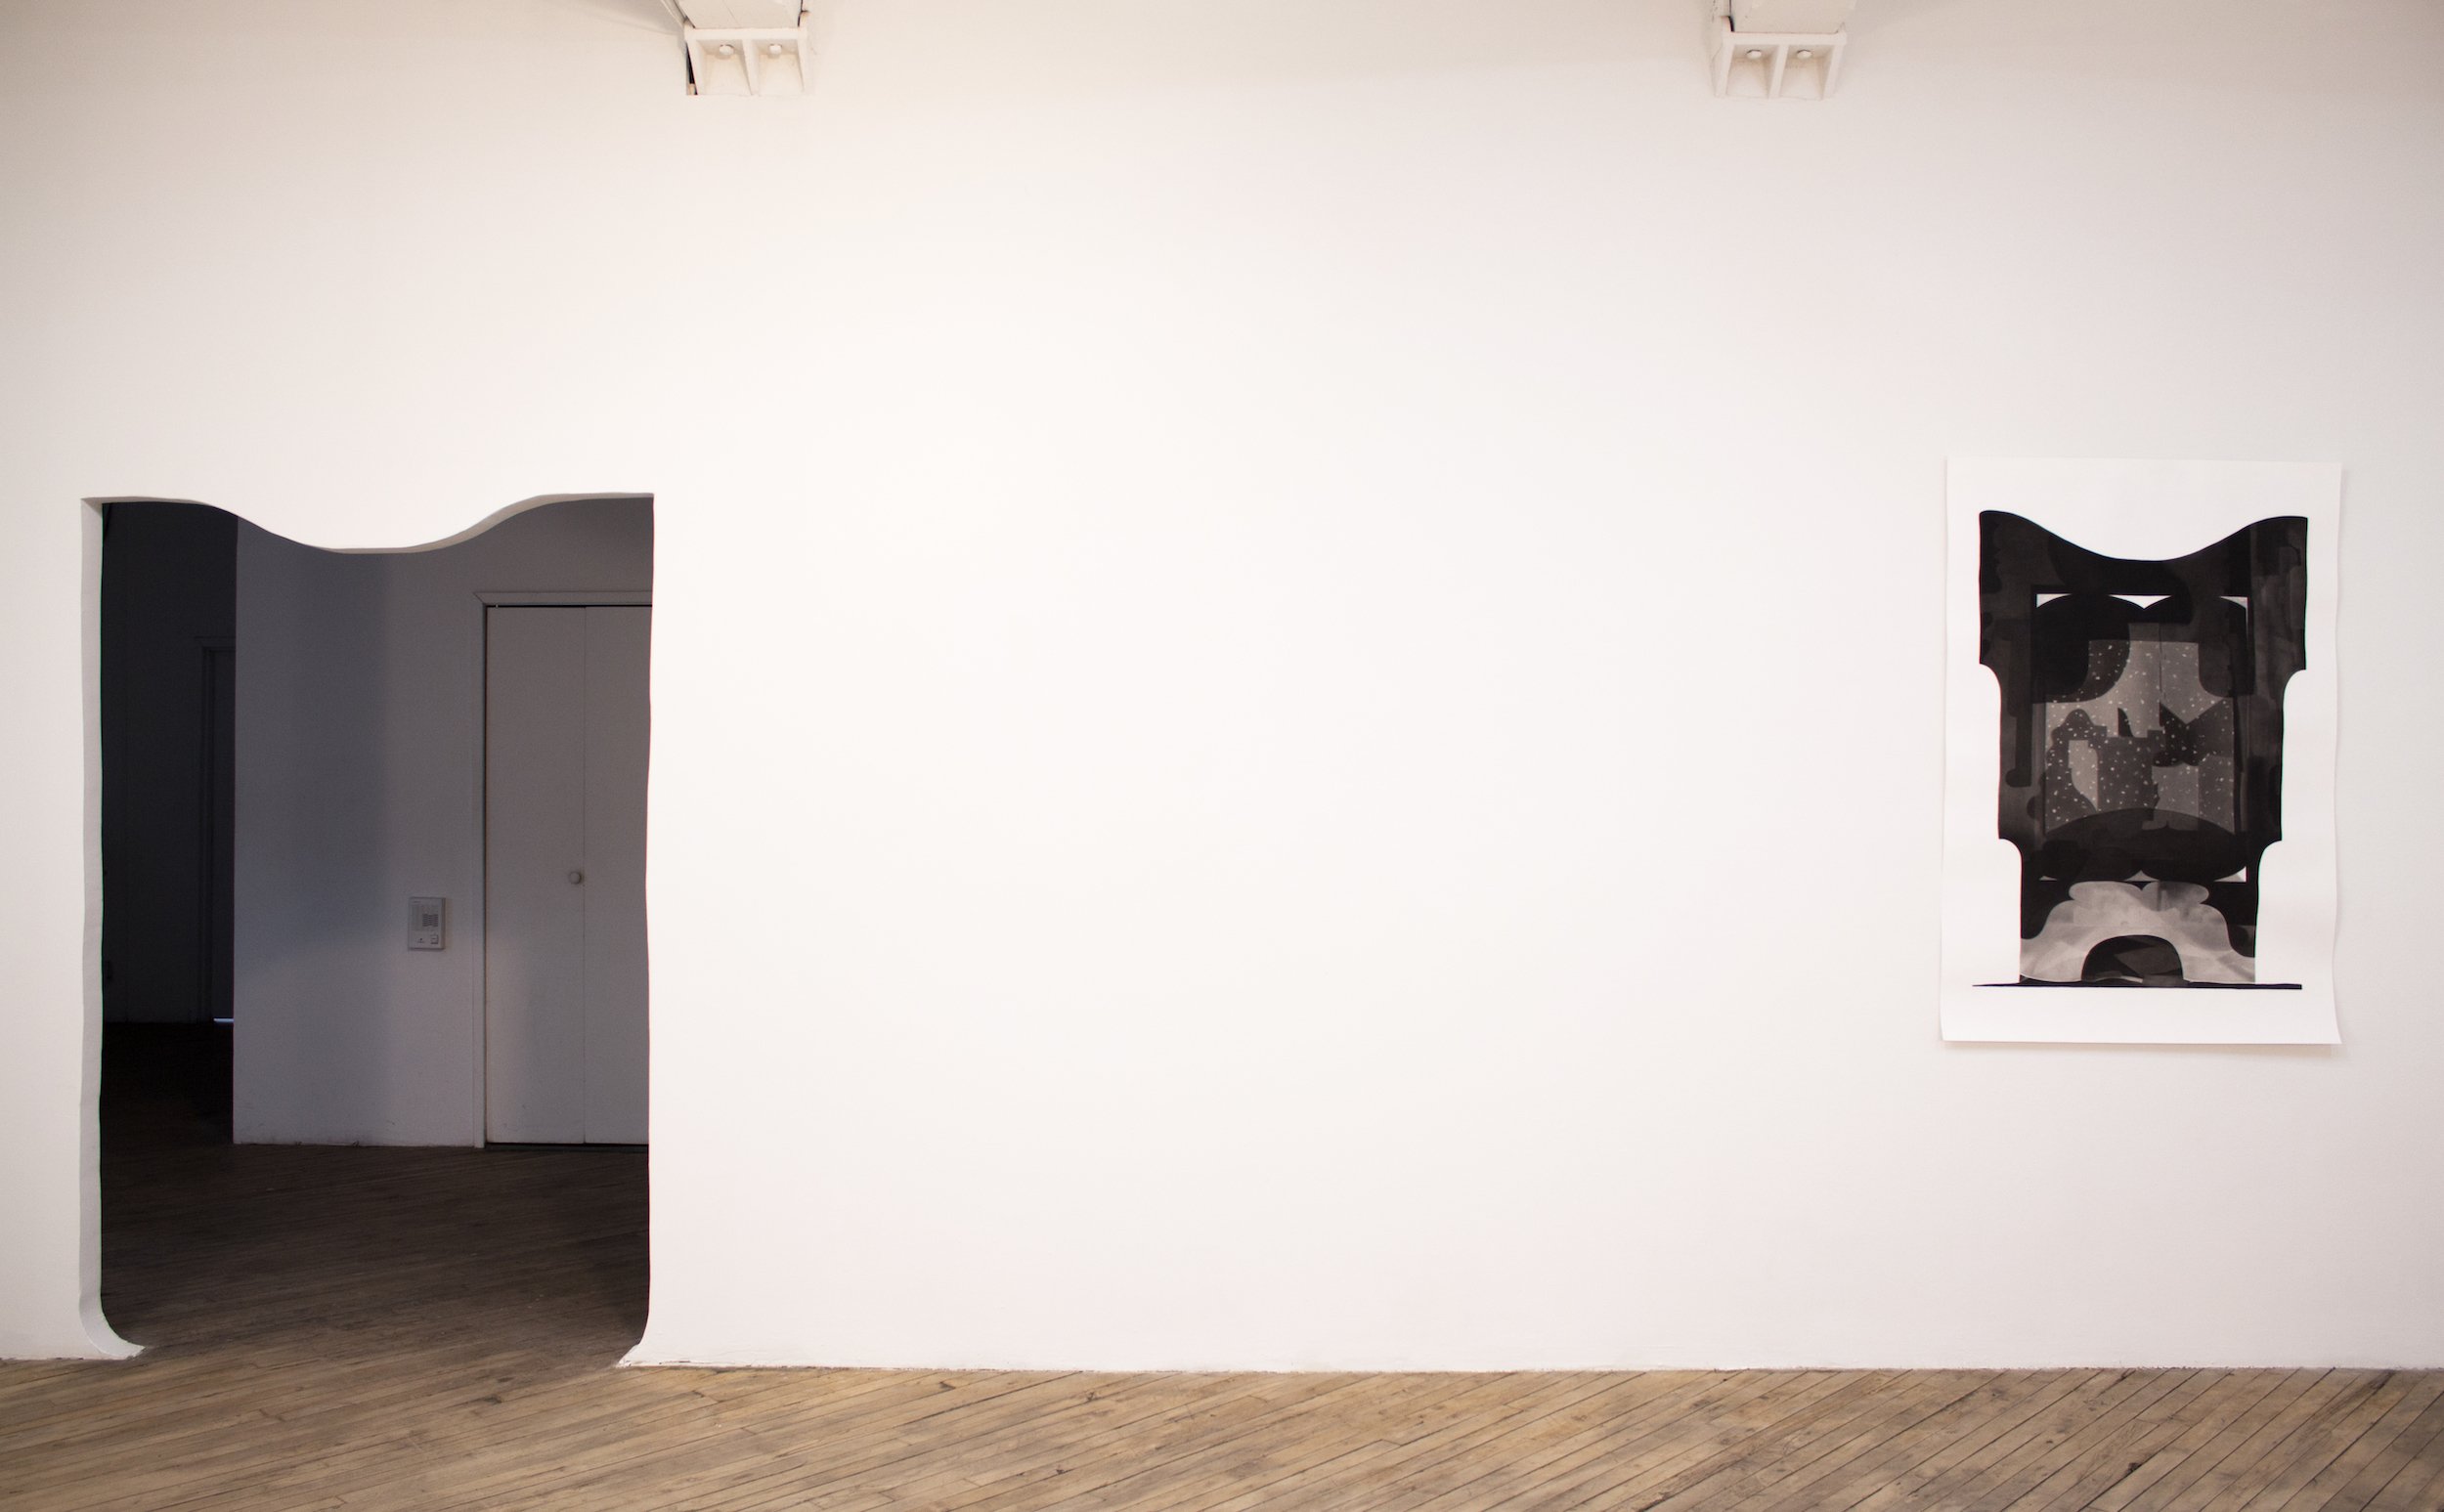  Installation view,  Threshold , Vox Populi Gallery 